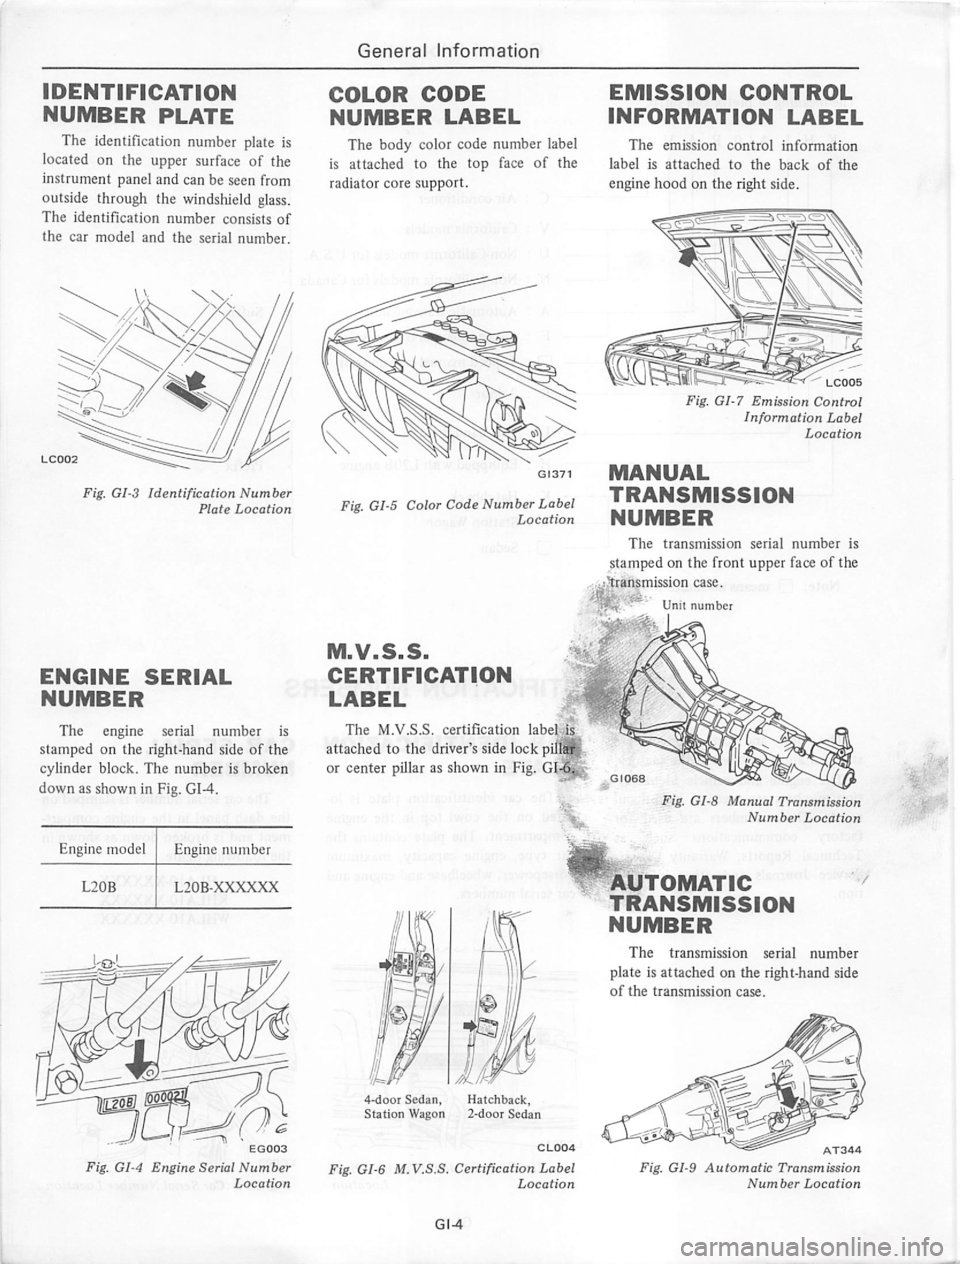 DATSUN 280Z 1977  Service Repair Manual 